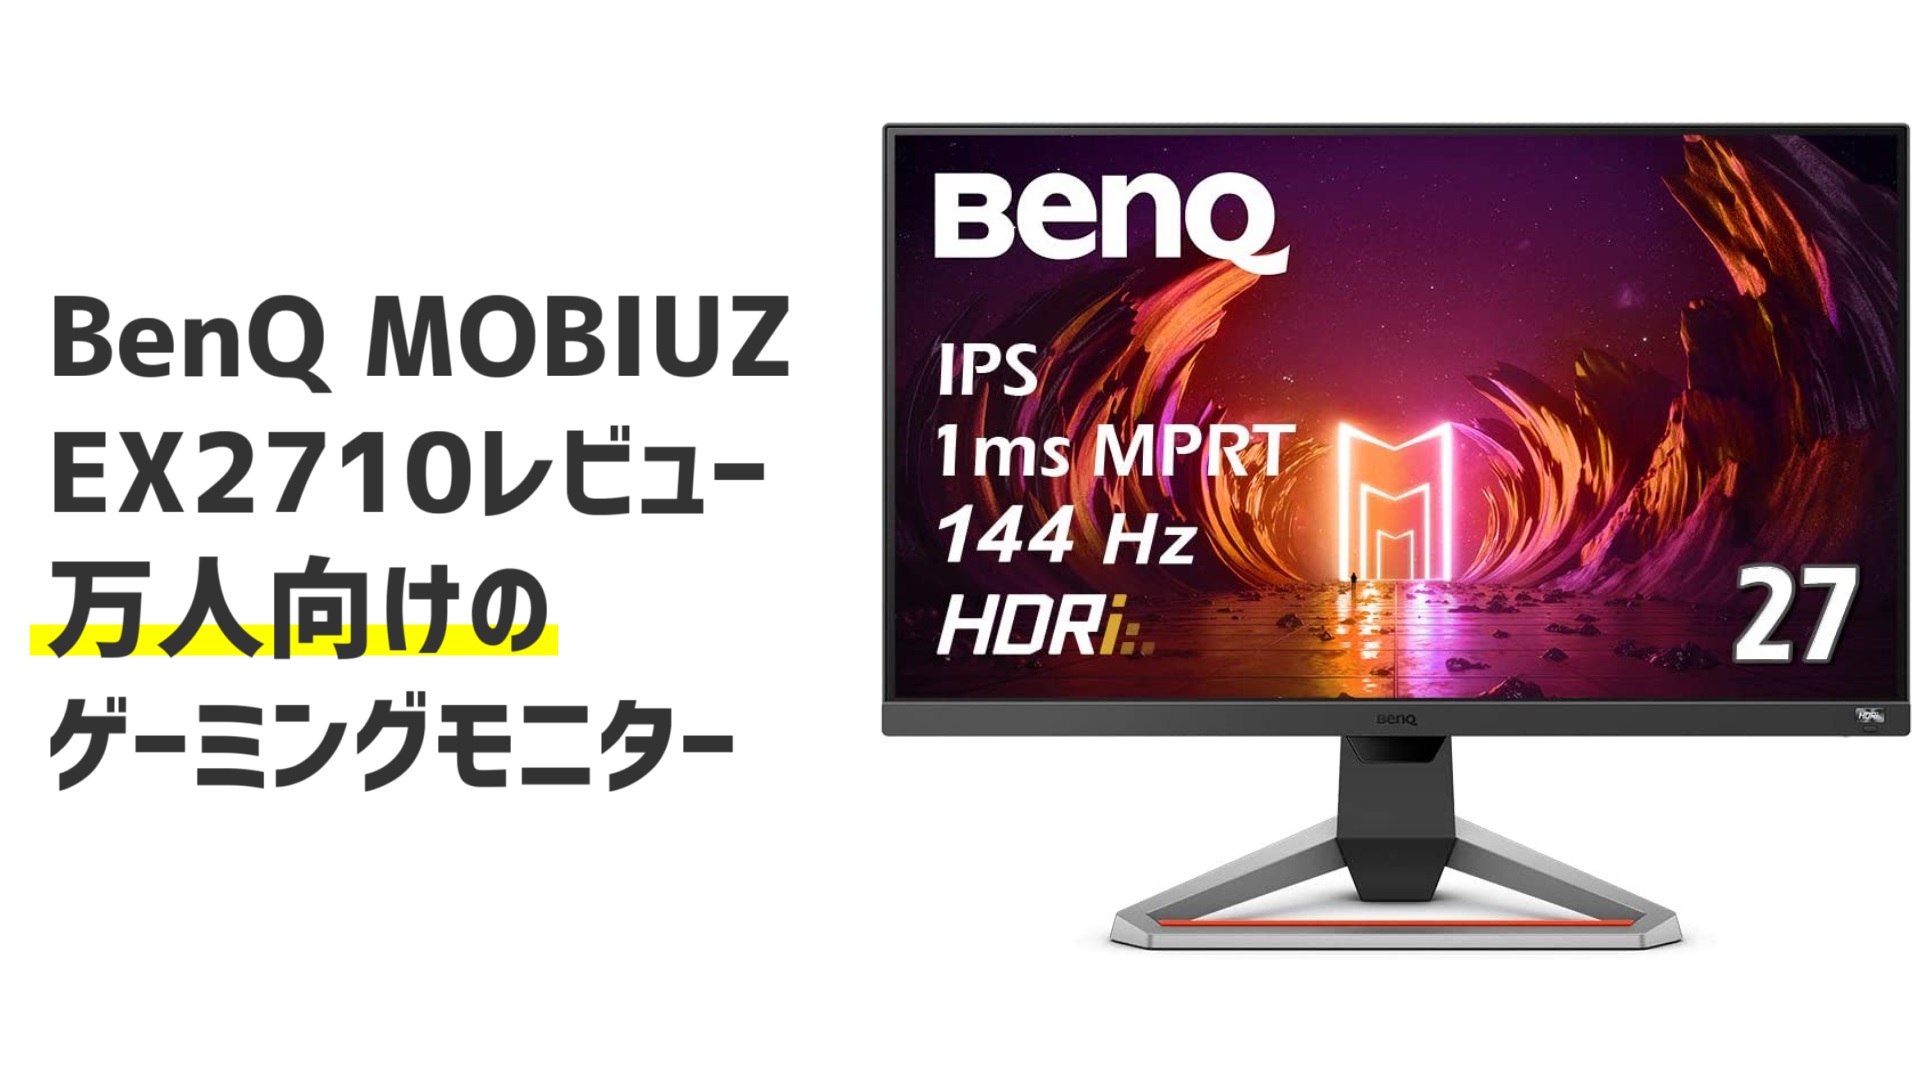 【レビュー】BenQ MOBIUZ EX2710を購入。誰もが満足するゲーミングモニターです。